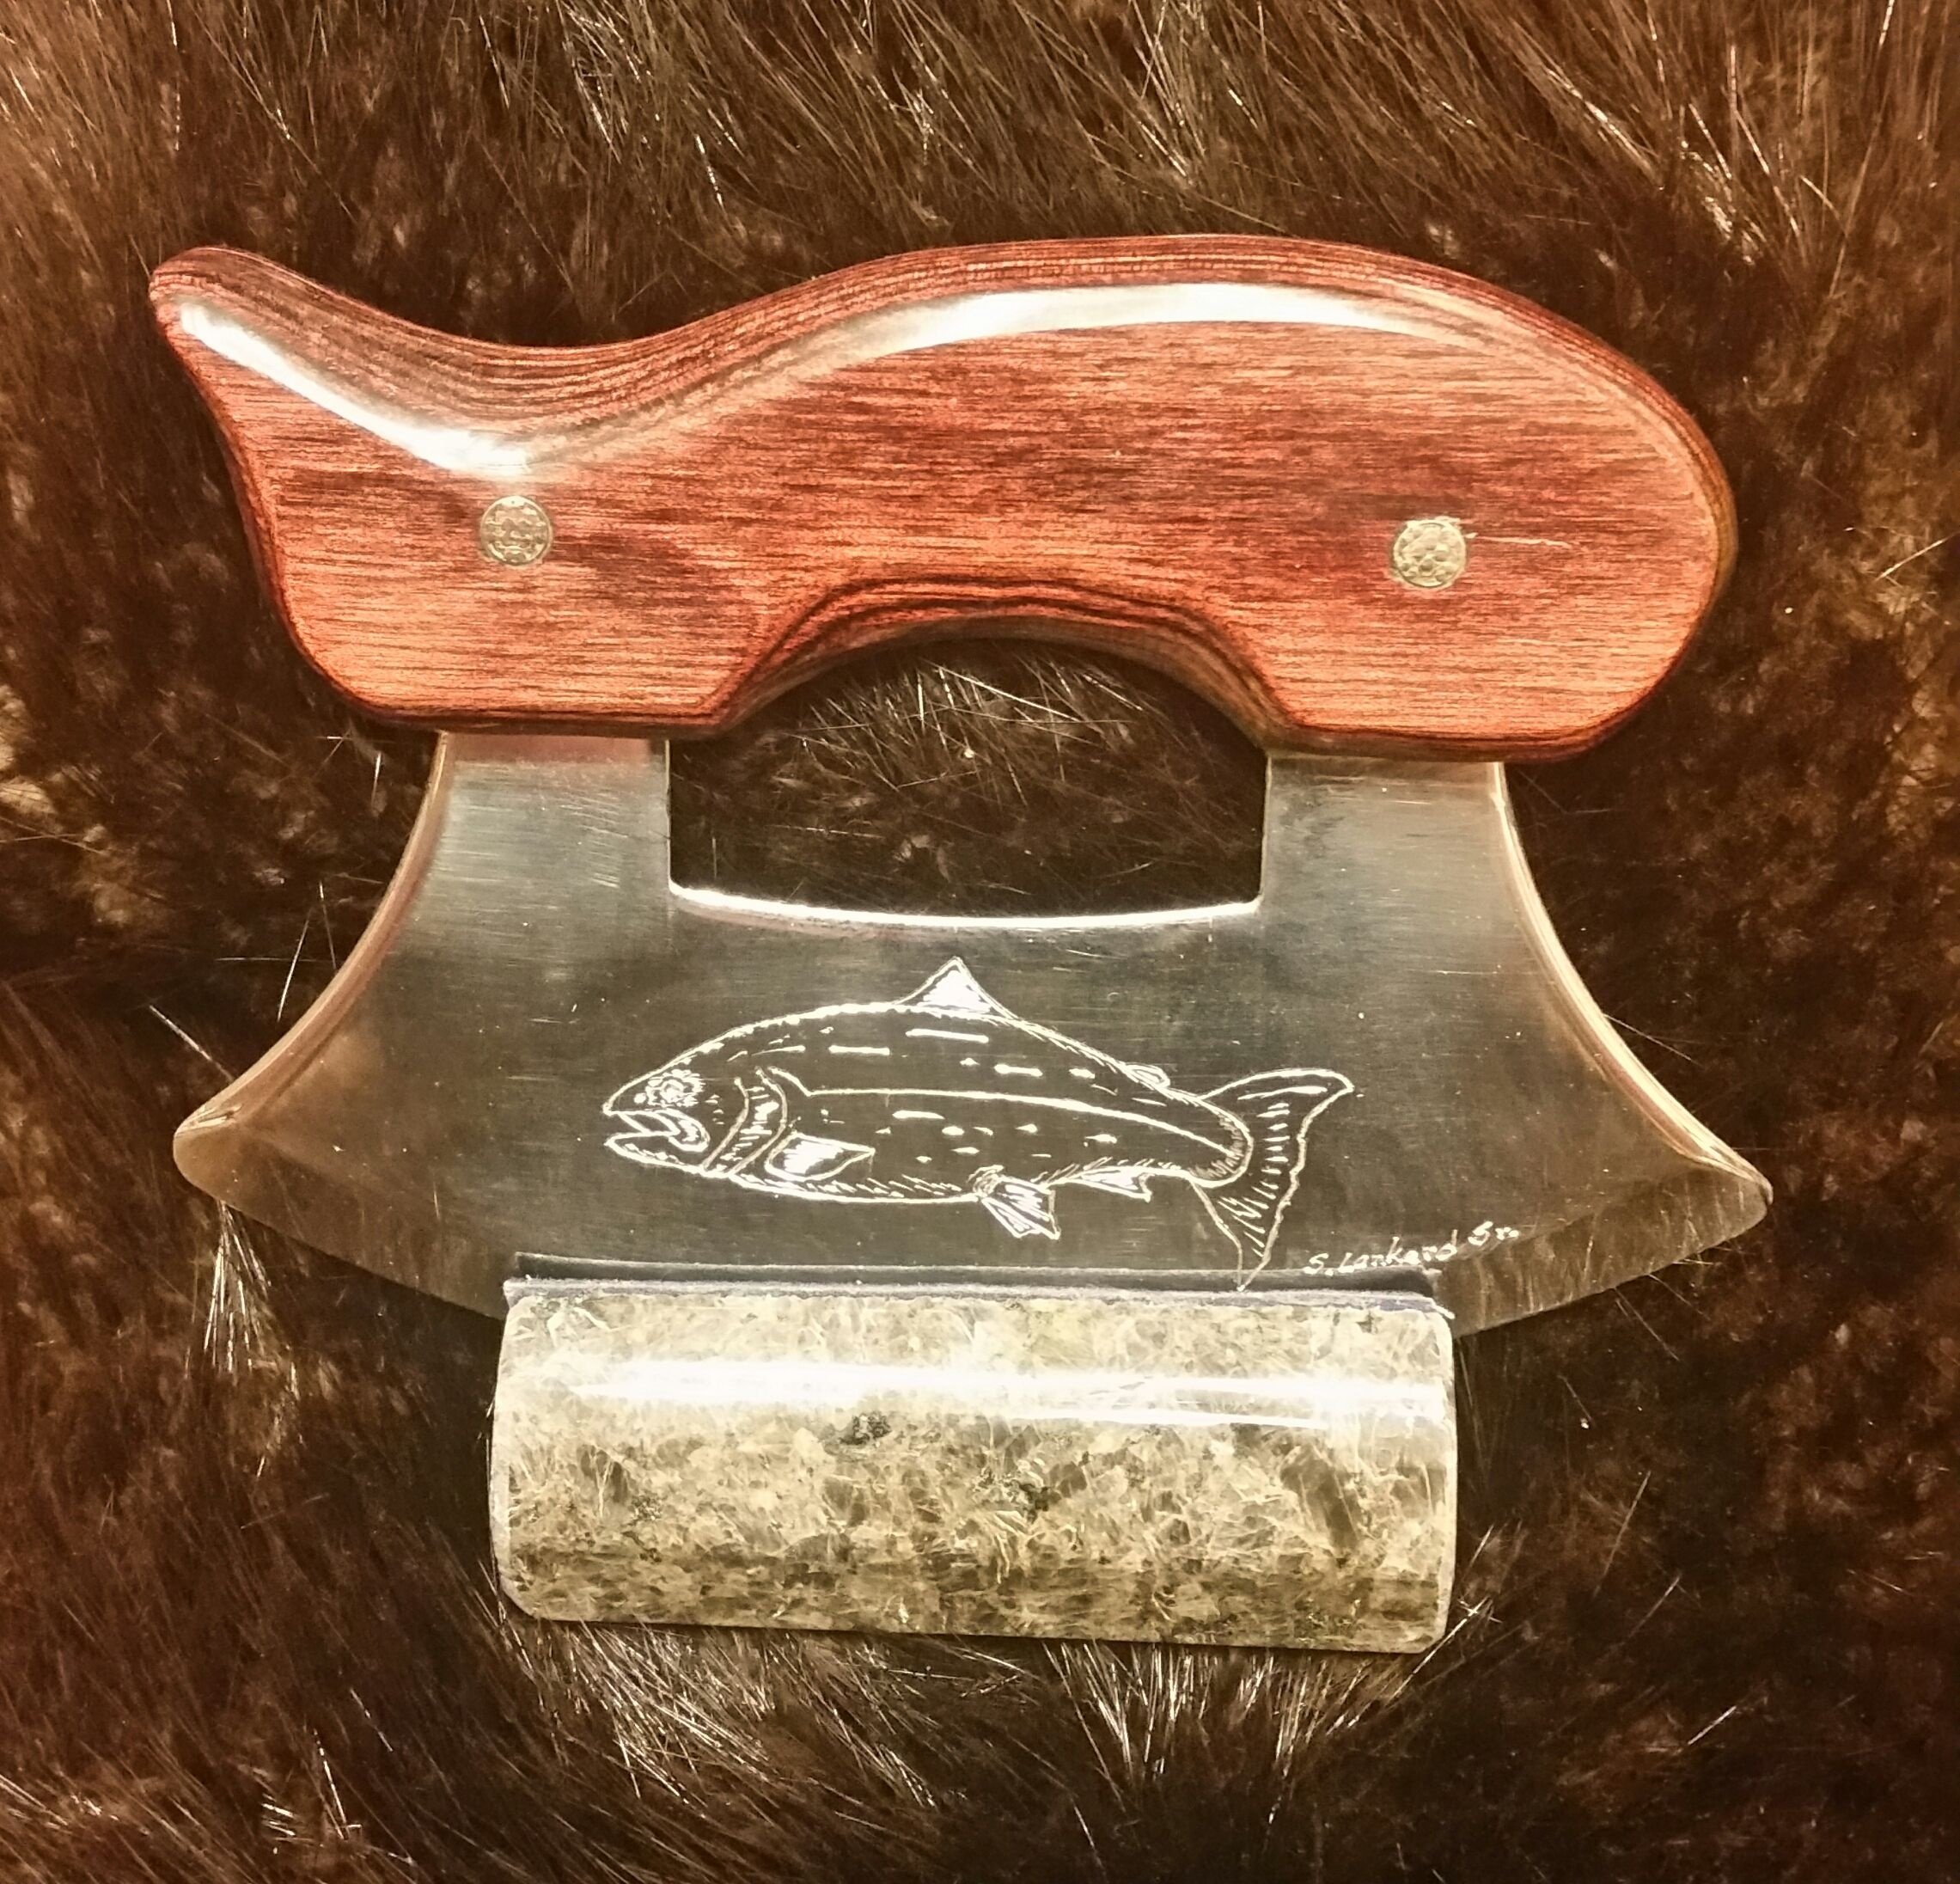 Salmon Engraved Ulu with Dymondwood Handle,   $110.00   SOLD